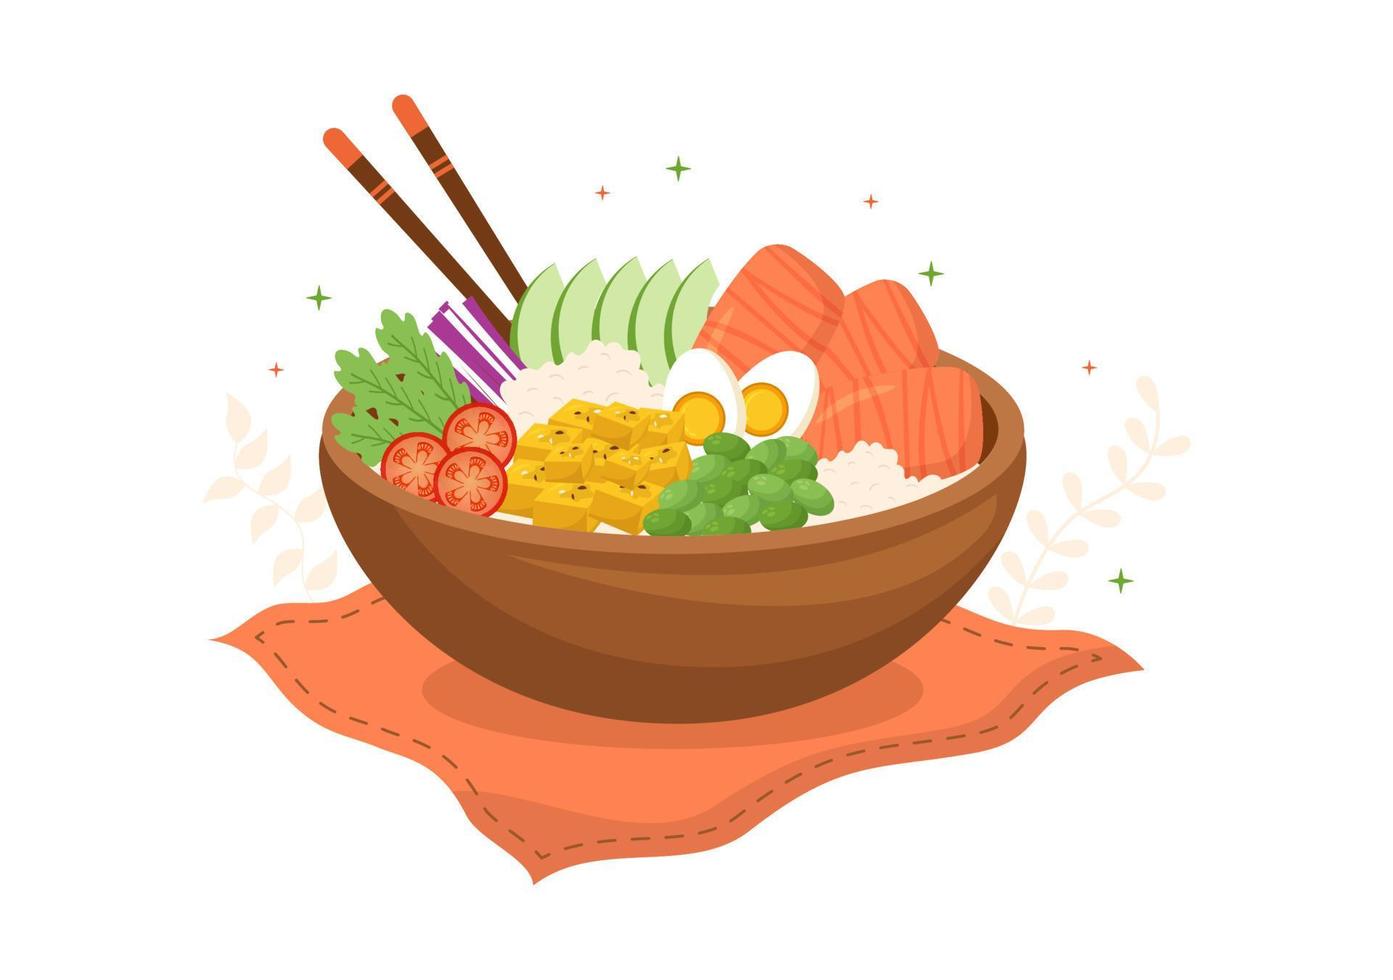 hawaiianisches gericht poke bowl lebensmittelvorlage handgezeichnete flache illustration der karikatur mit reis, thunfisch, frischem fisch, ei und gemüse design vektor